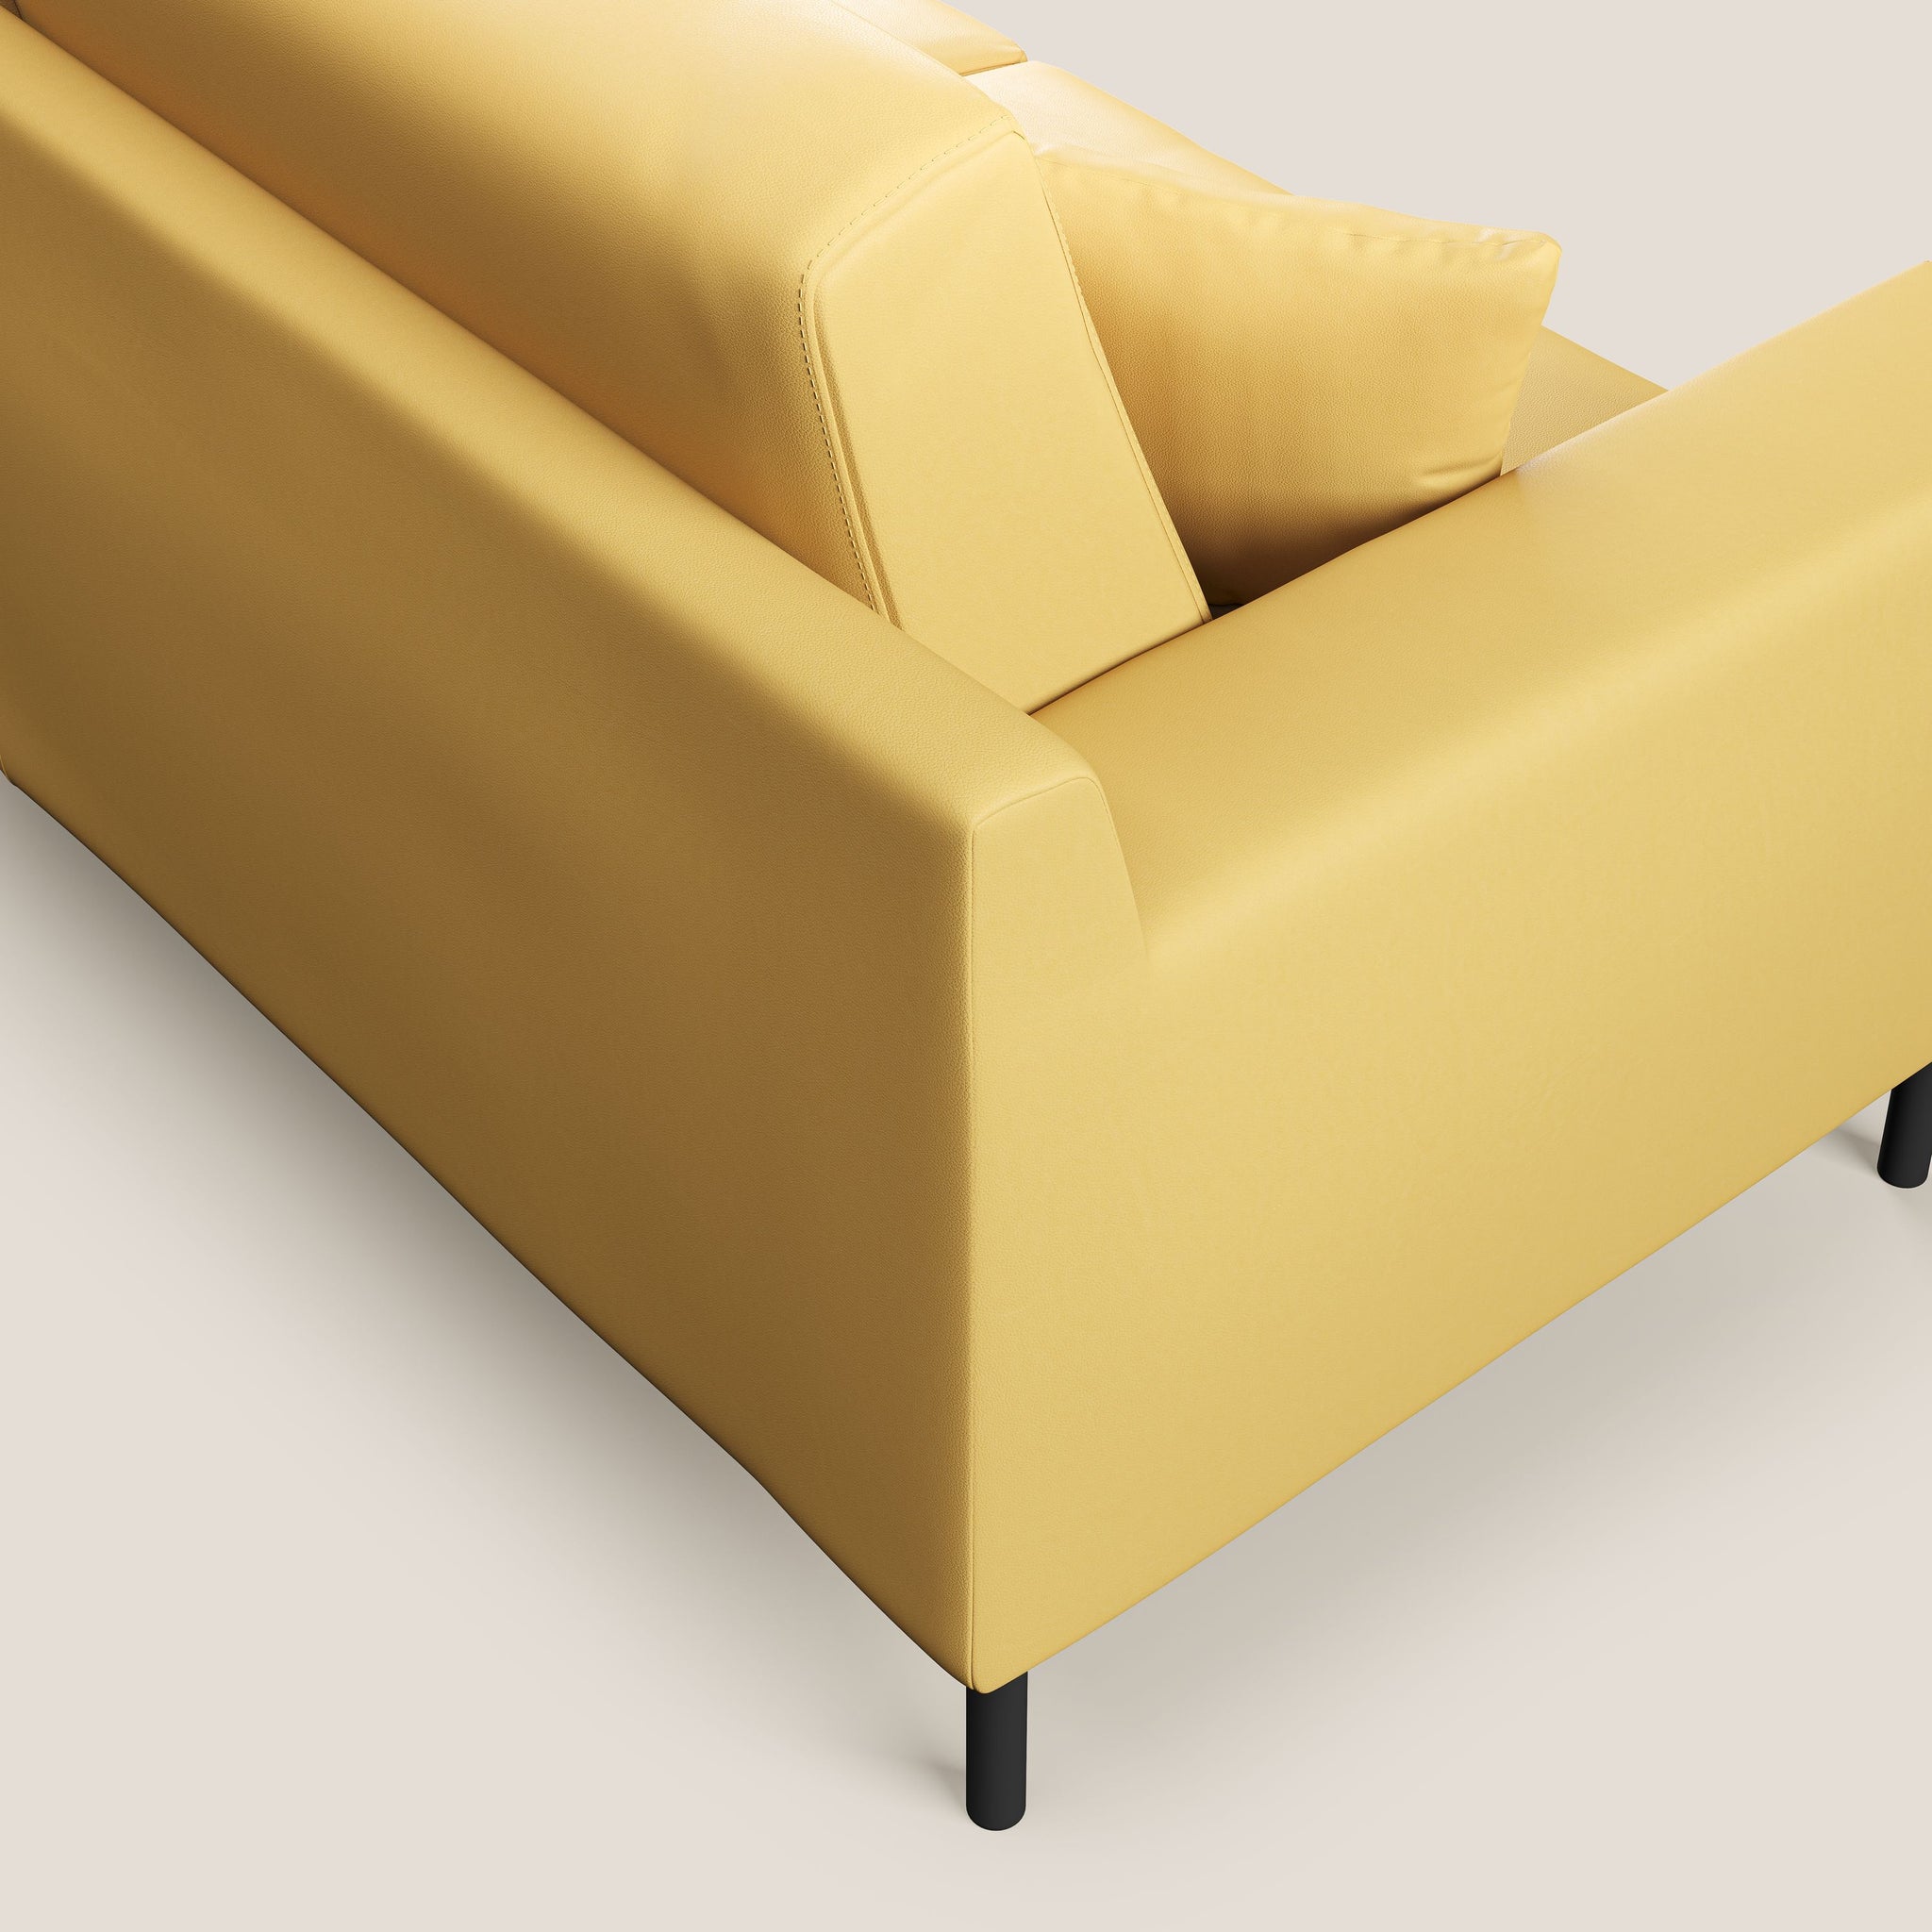 Uranio divano angolare moderno REVERSIBILE in Ecopelle impermeabile T04